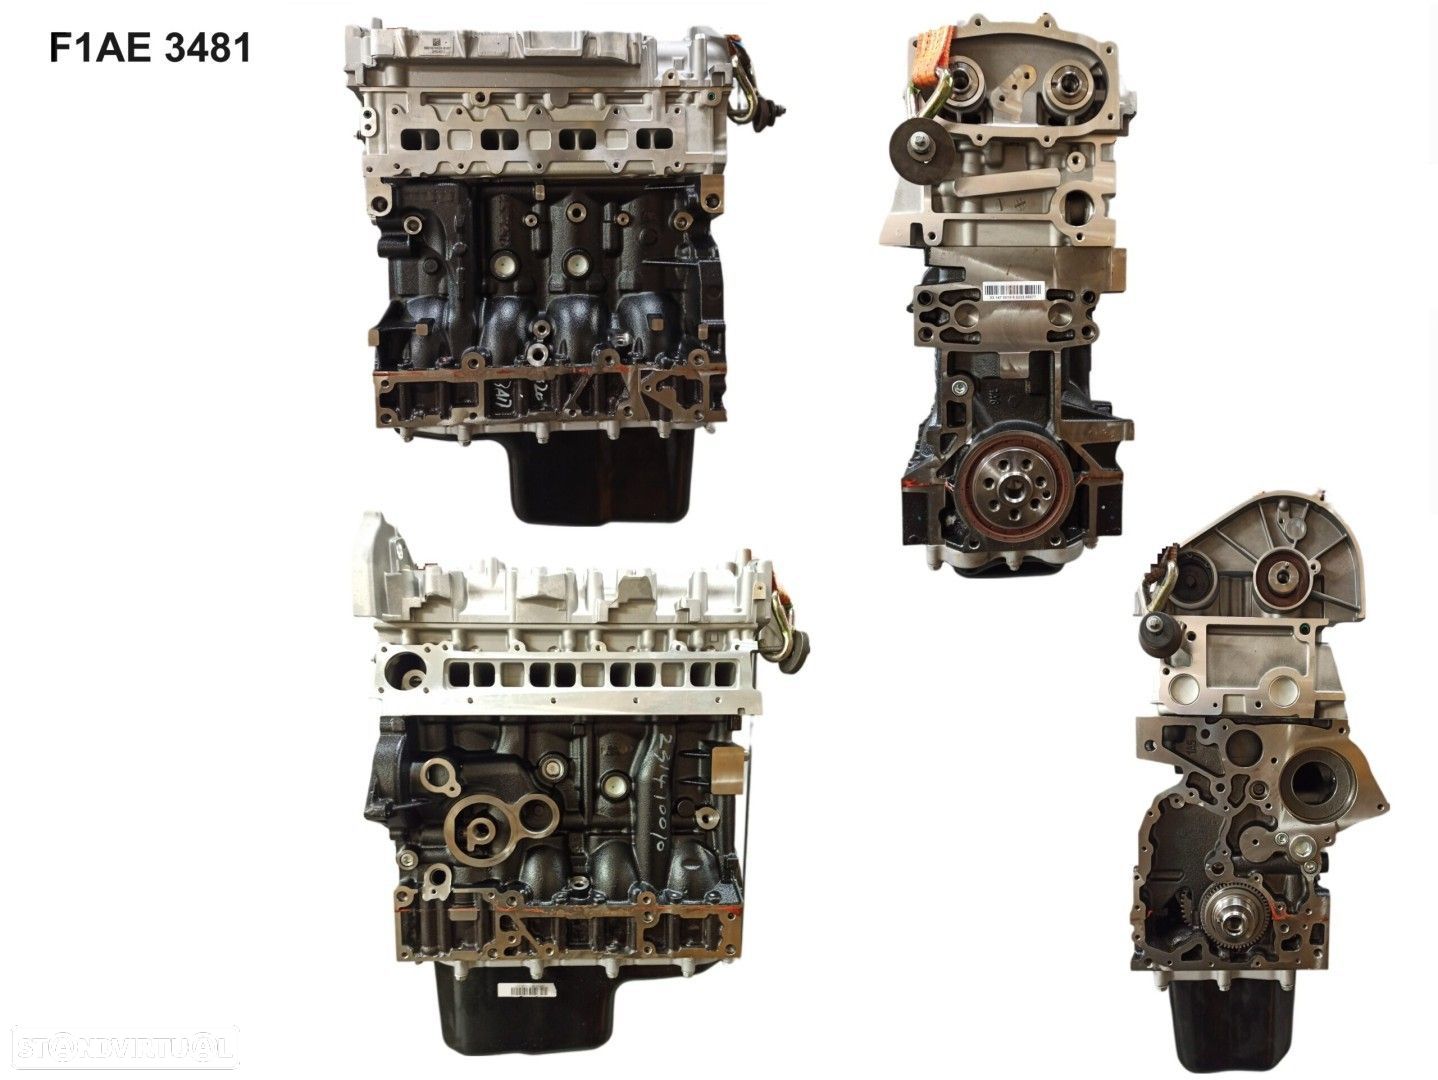 Motor  Novo FIAT DUCATO 130 Multijet 2.3D F1AE3481 - 1